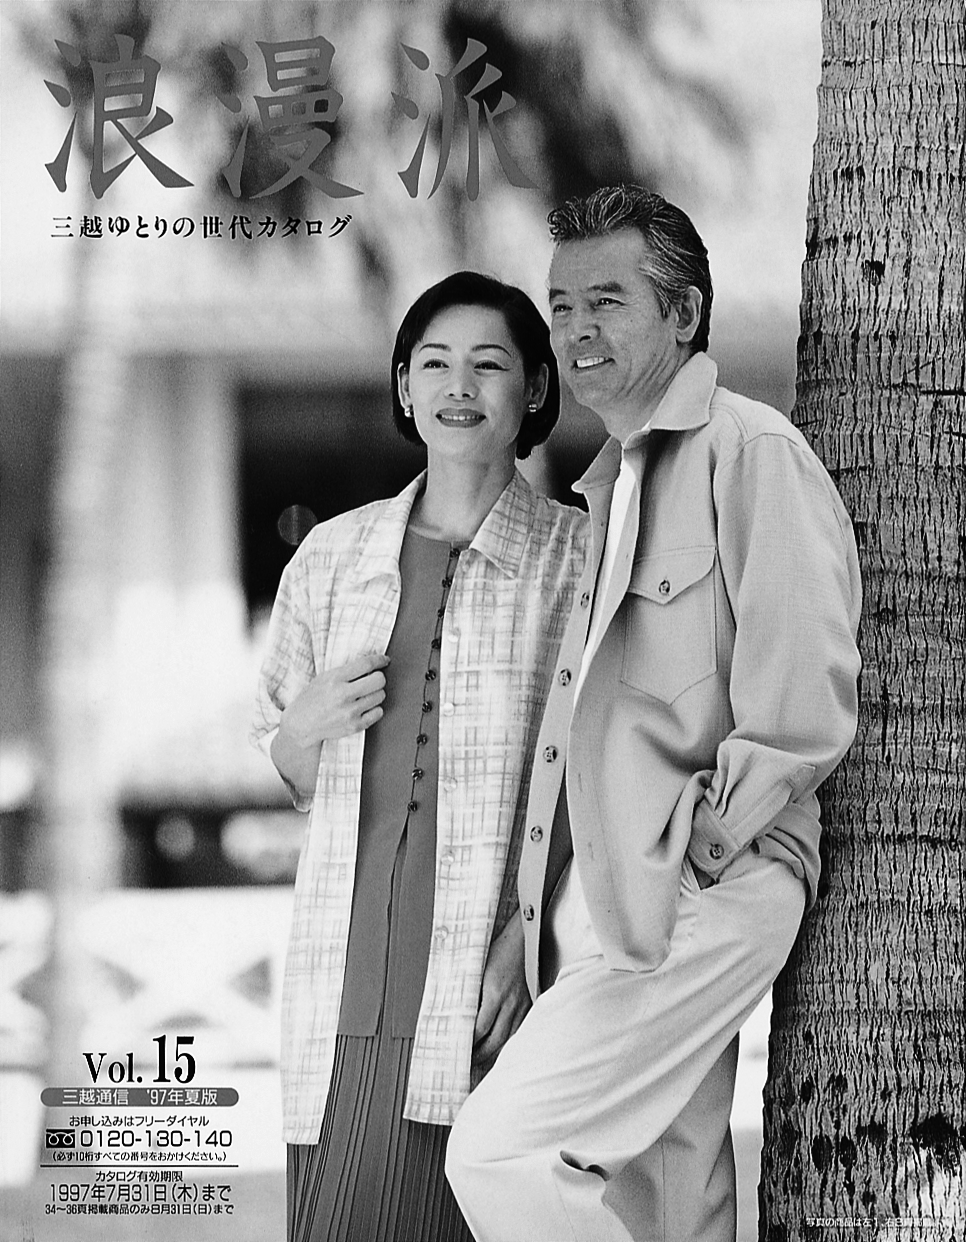 『浪漫派』97年夏号。ゆとりある熟年夫婦の洗練されたファッションが提案されている